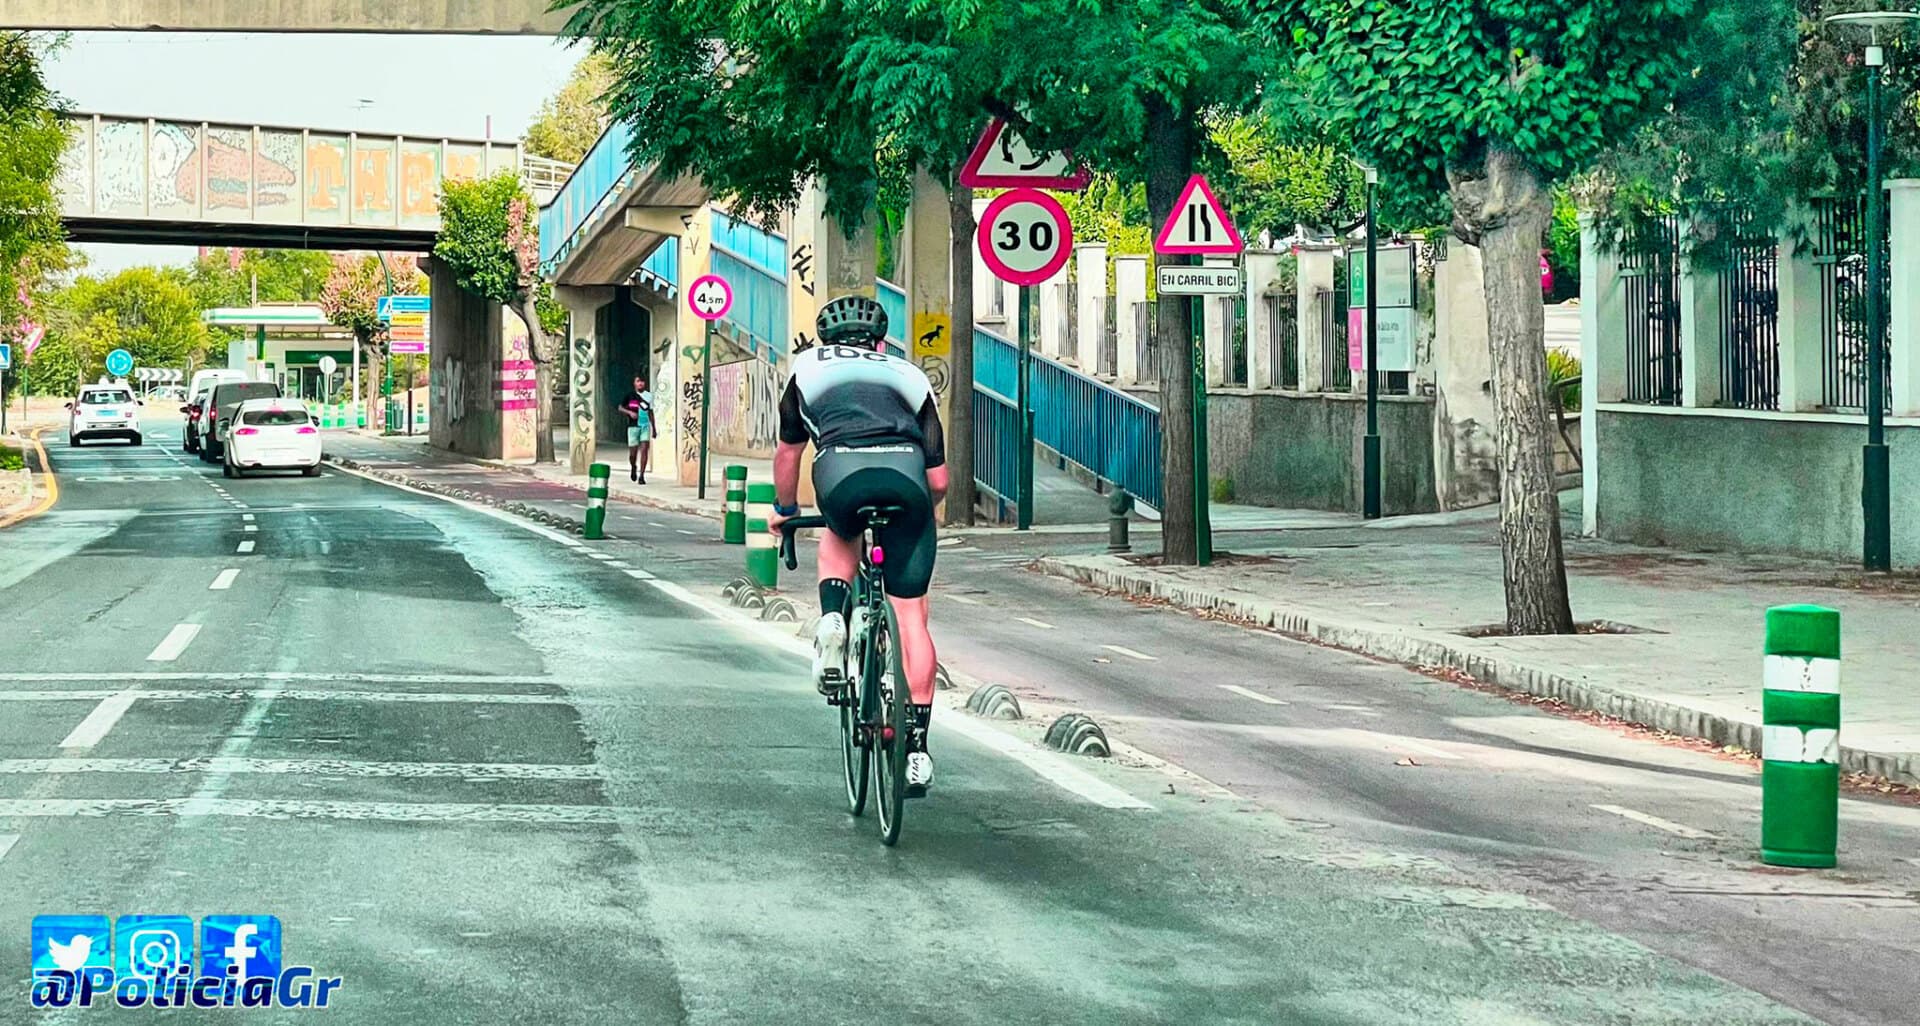 Por qué va por la carretera este ciclista, cuando existe un carril bici, pues porque quiere y porque puede